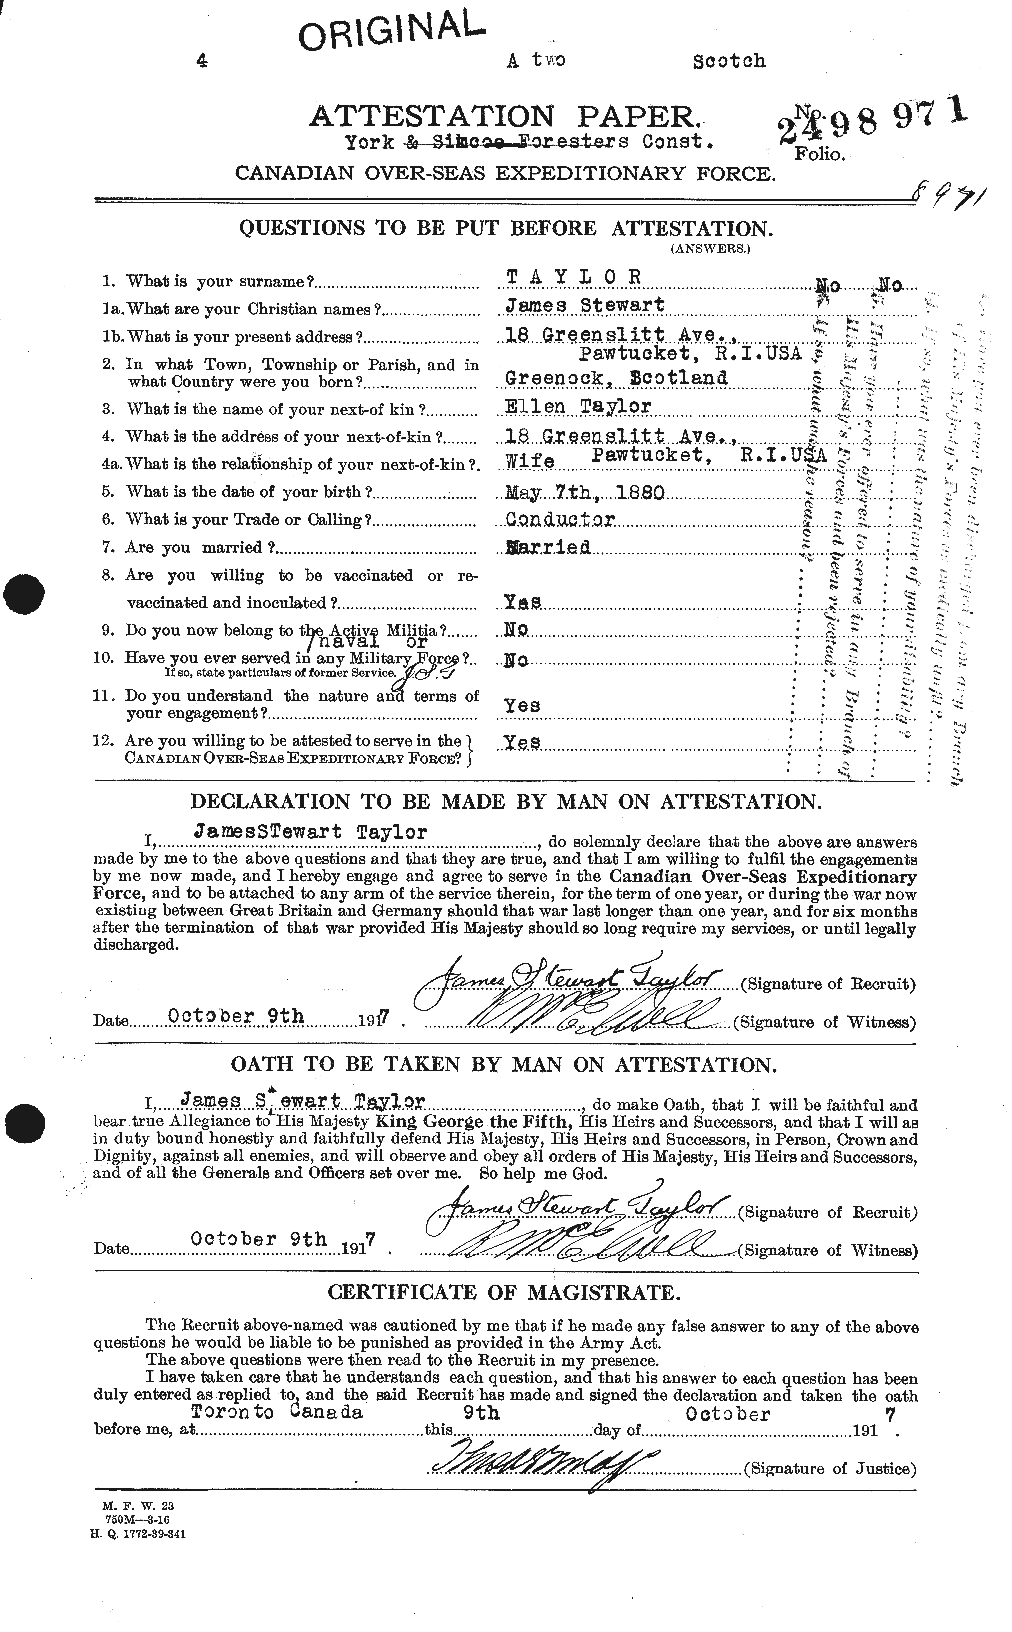 Dossiers du Personnel de la Première Guerre mondiale - CEC 626956a